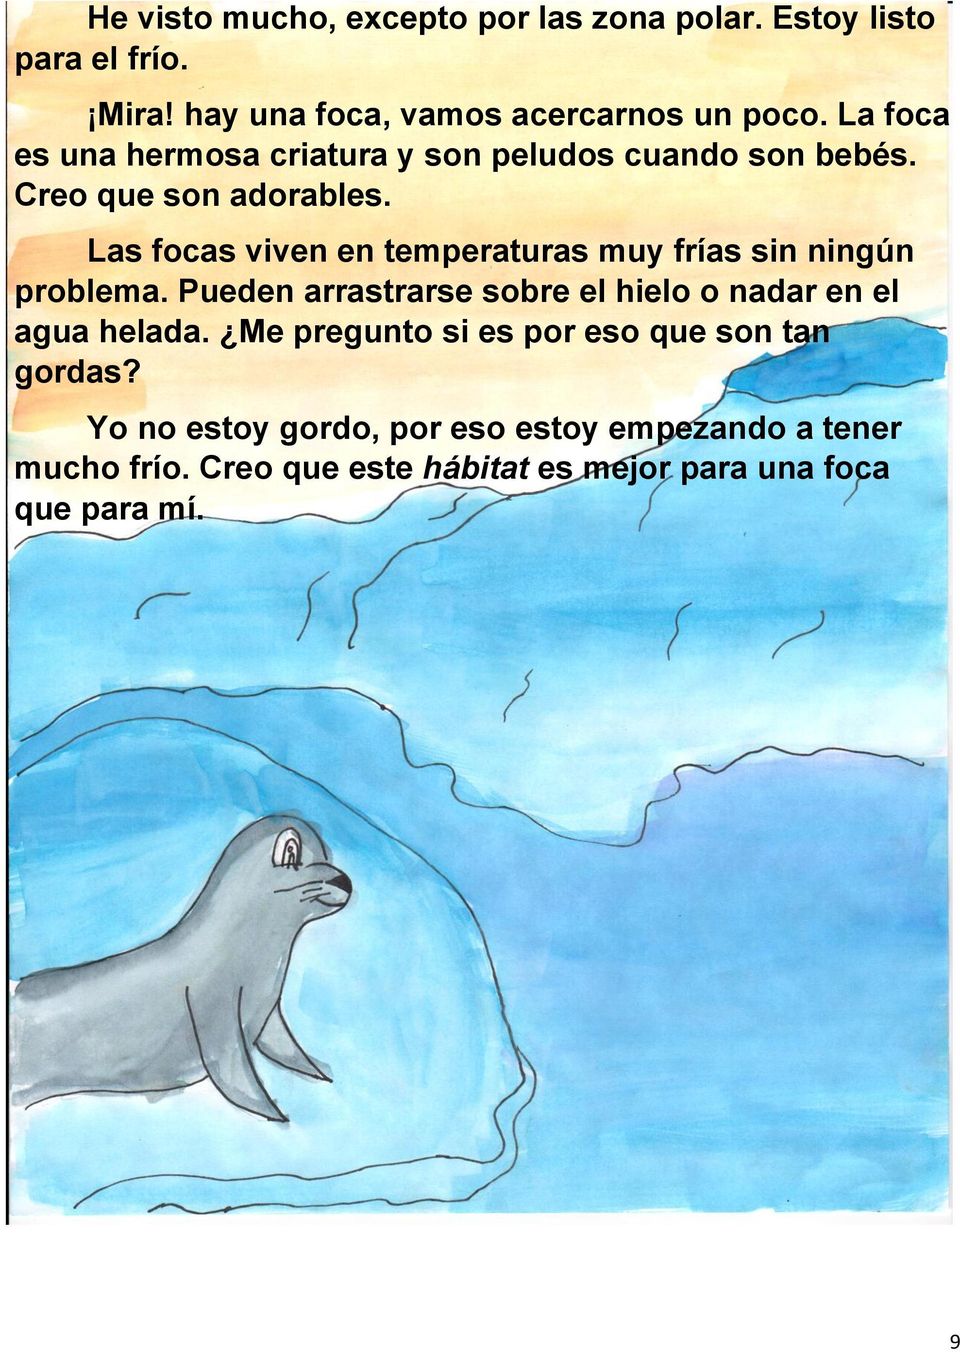 Las focas viven en temperaturas muy frías sin ningún problema. Pueden arrastrarse sobre el hielo o nadar en el agua helada.